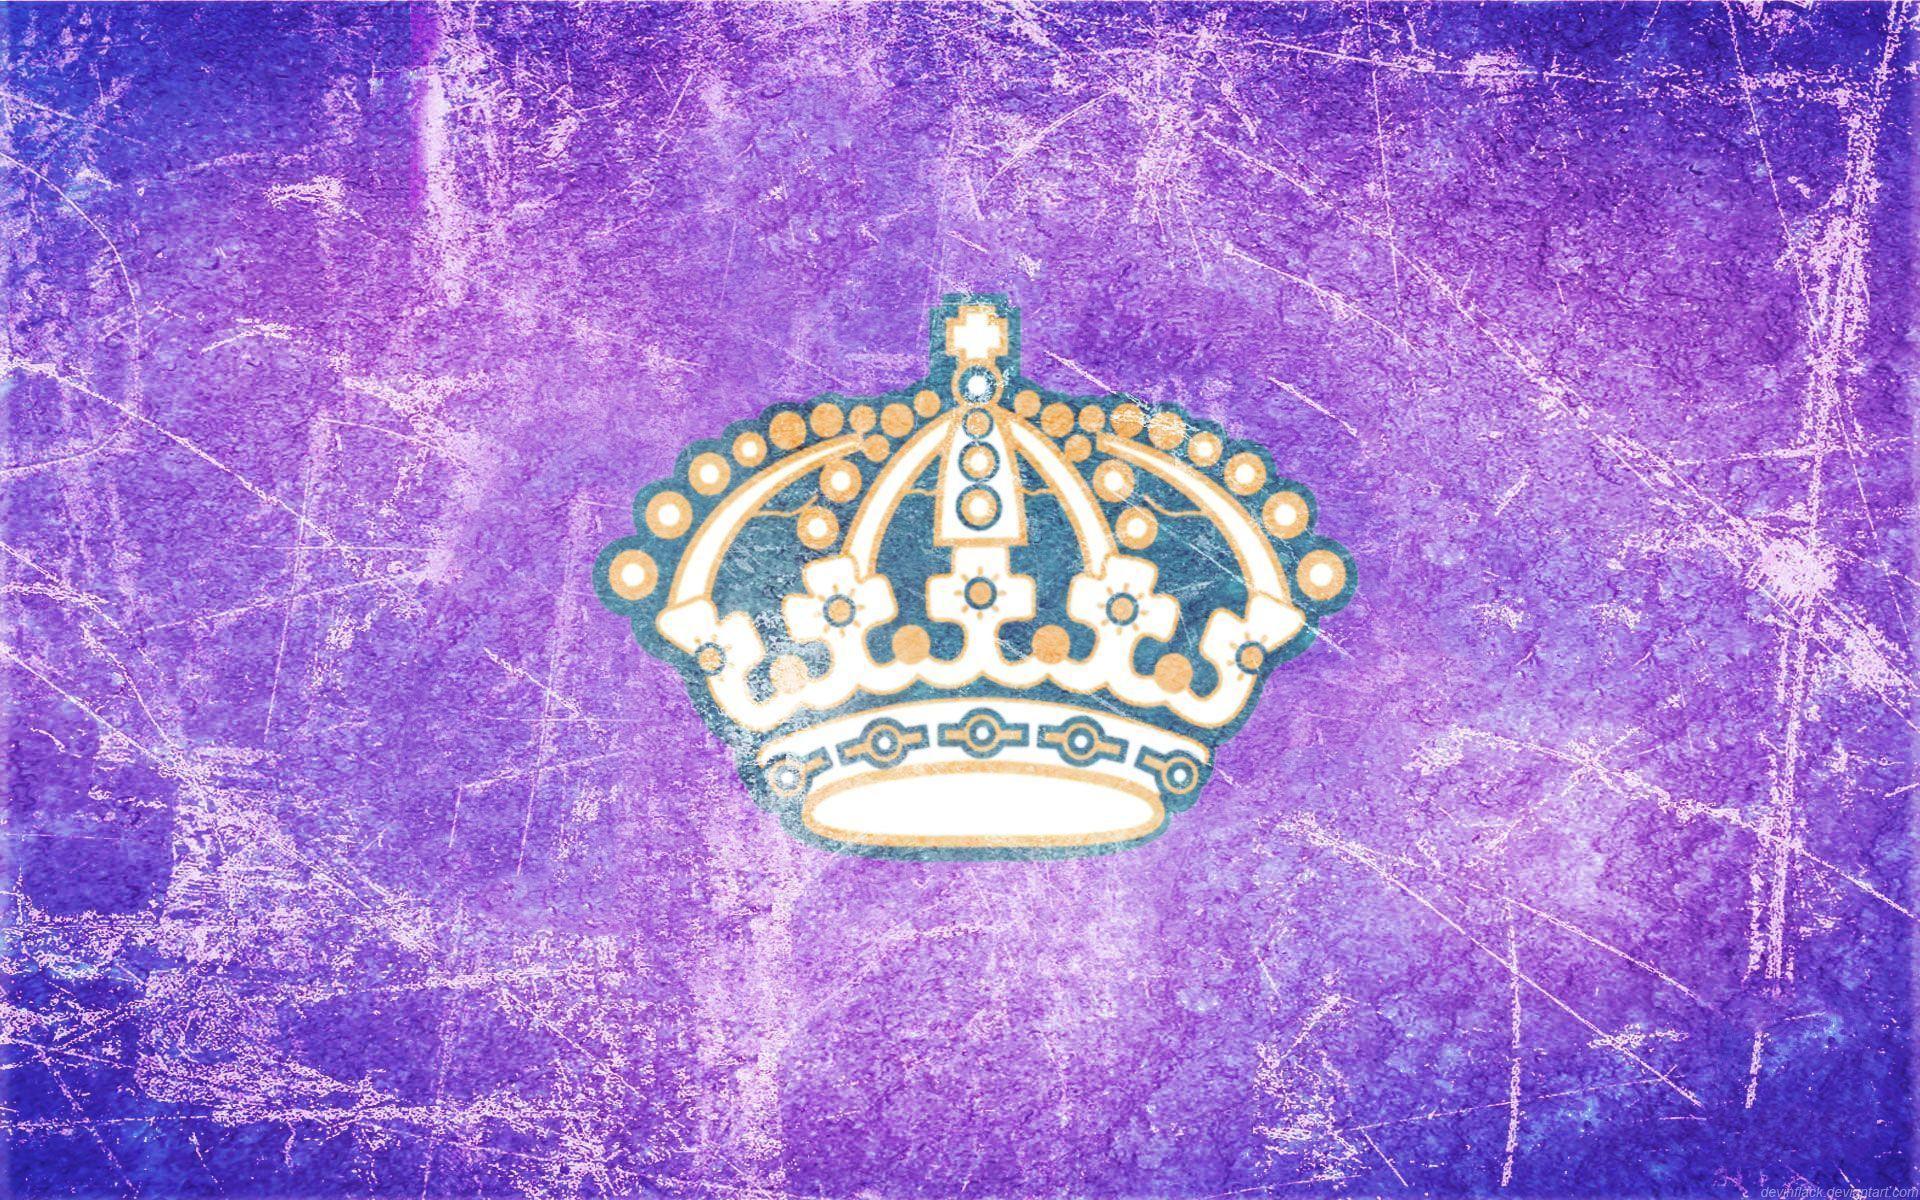 Los Angeles Kings wallpaper. Los Angeles Kings background